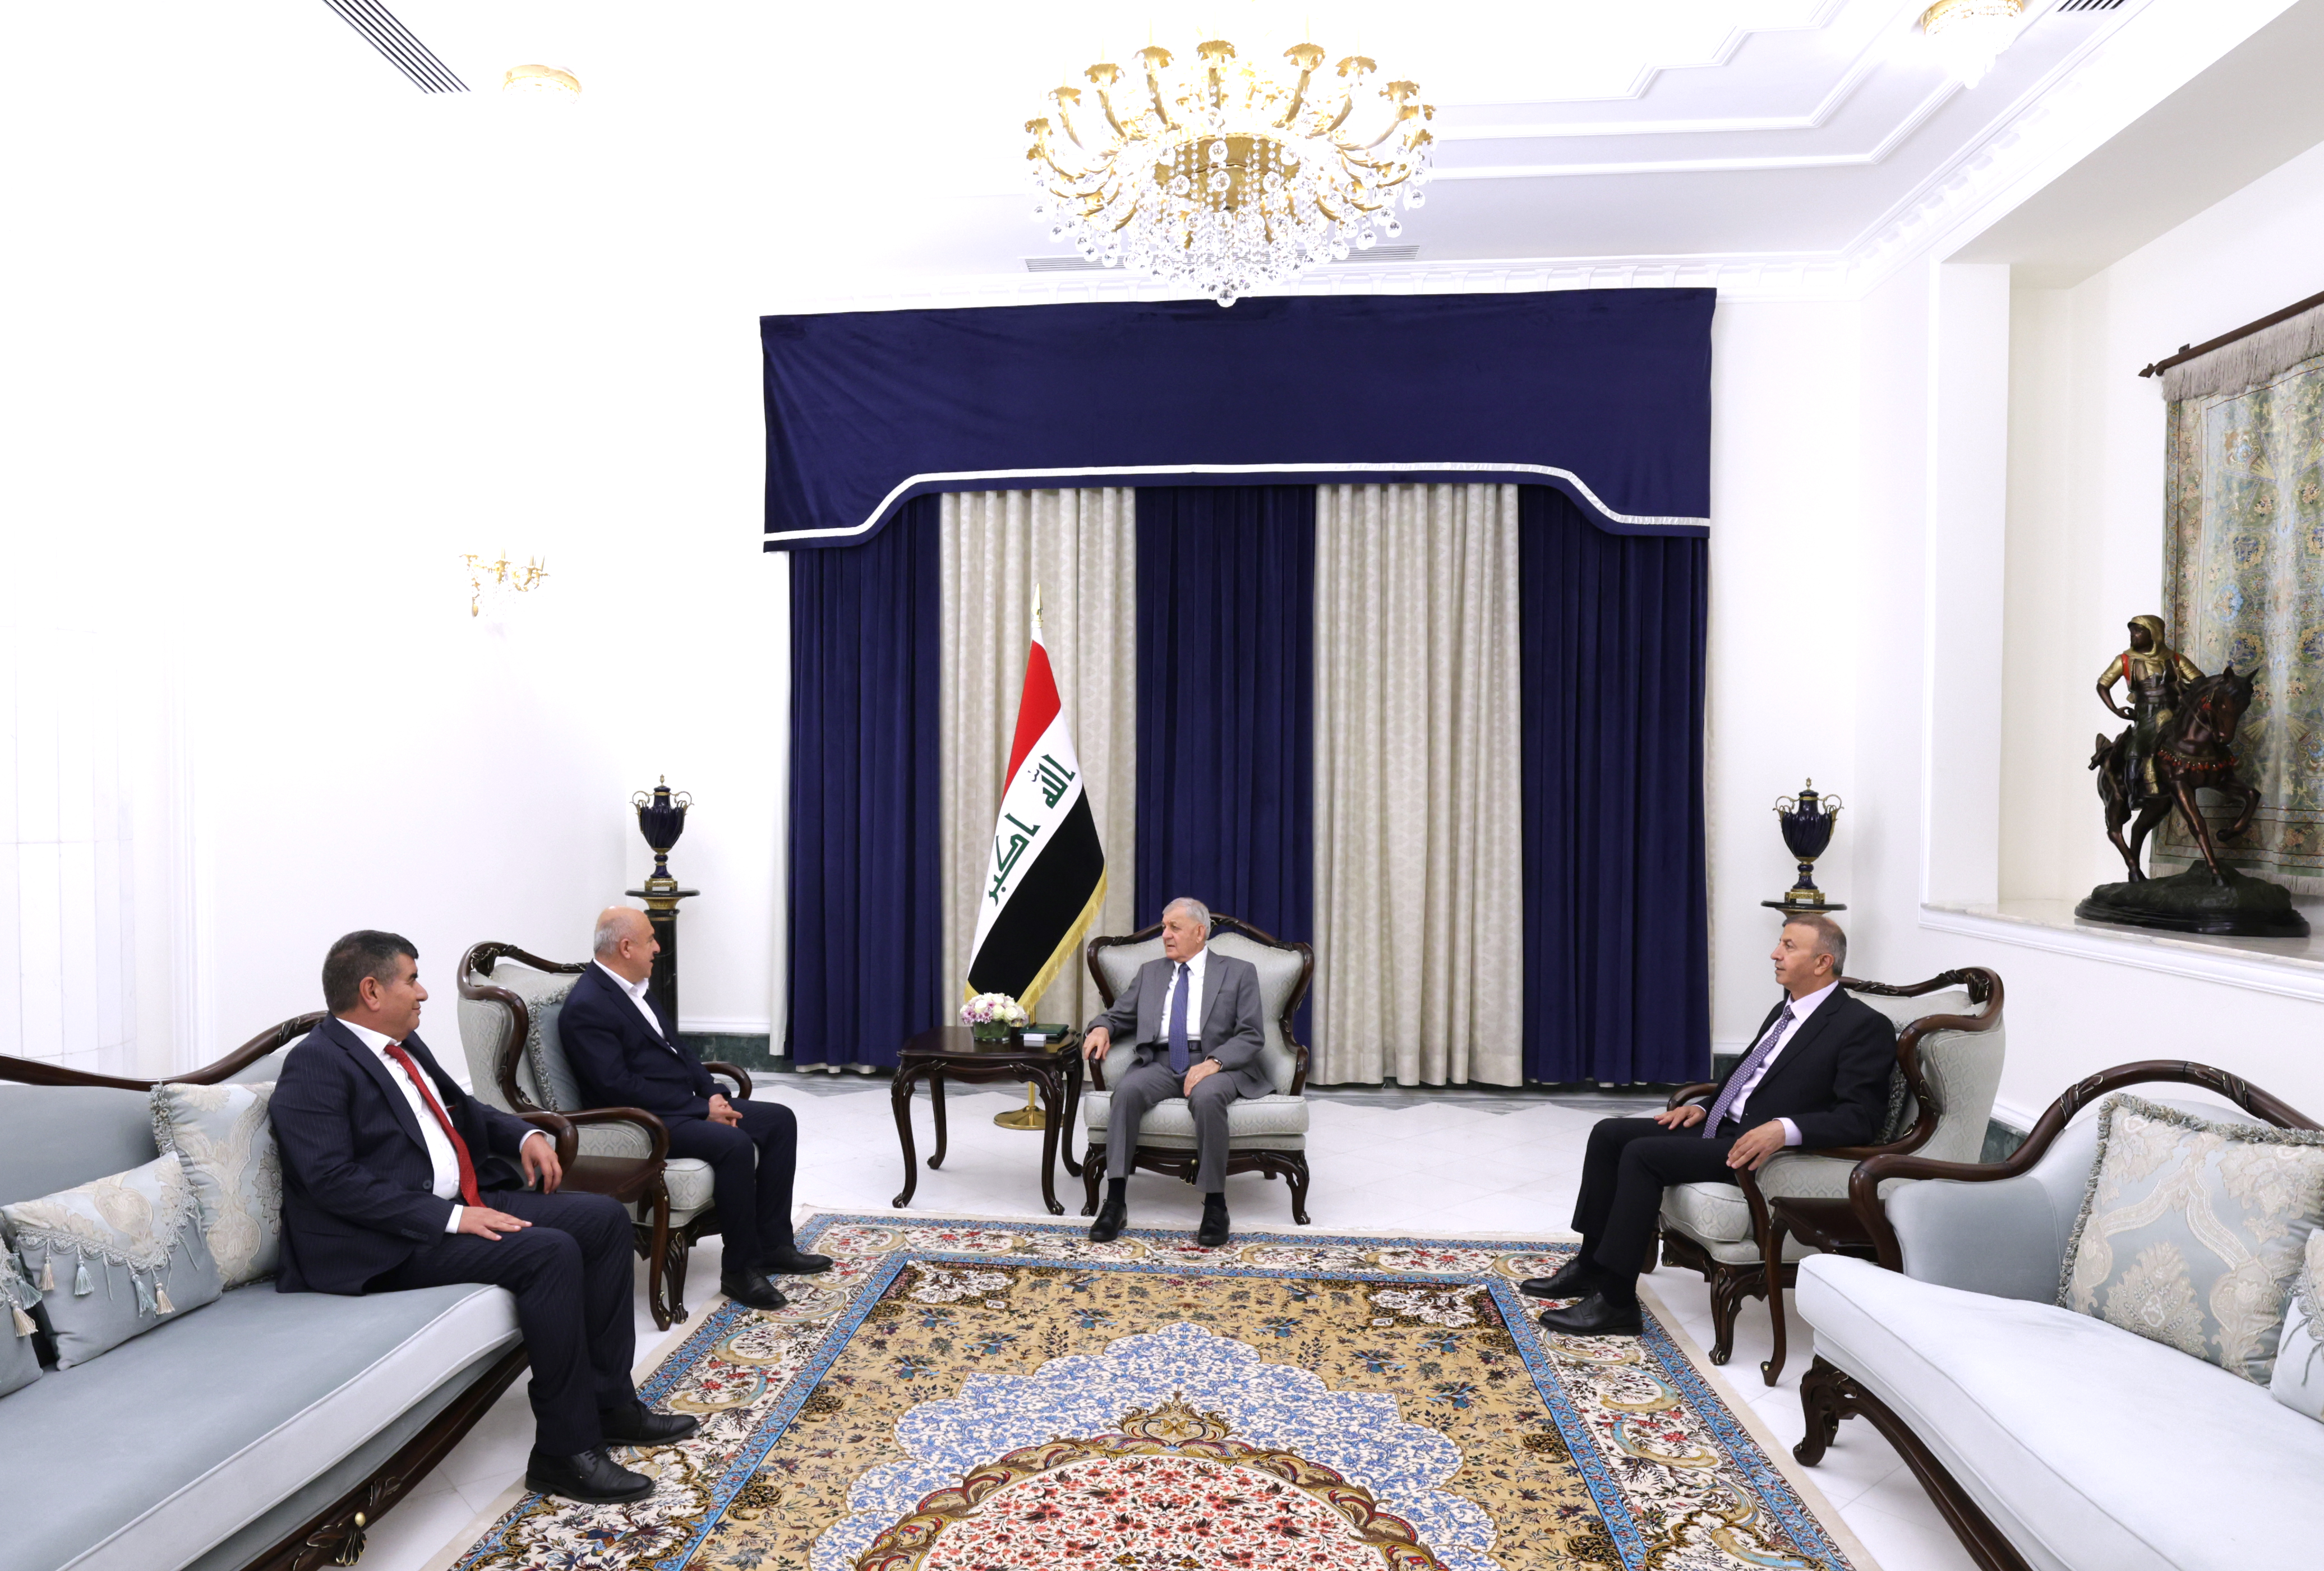 افتتاح مقر للمكتب السياسي للاتحاد الوطني في بغداد خطوة إيجابية